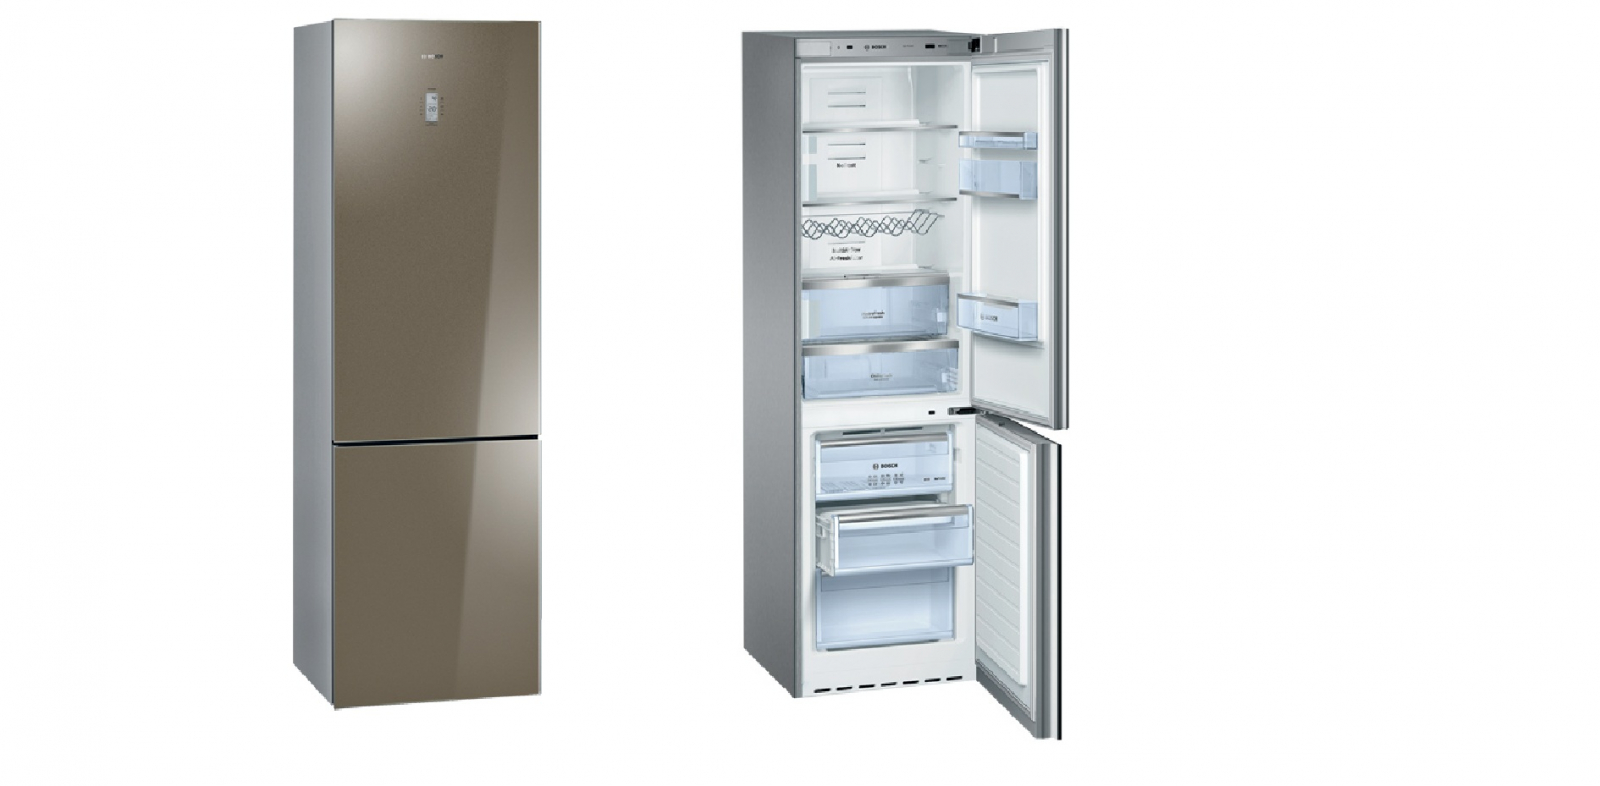 холодильник bosch kgn36s56ru, купить в Красноярске холодильник bosch kgn36s56ru,  купить в Красноярске дешево холодильник bosch kgn36s56ru, купить в Красноярске минимальной цене холодильник bosch kgn36s56ru